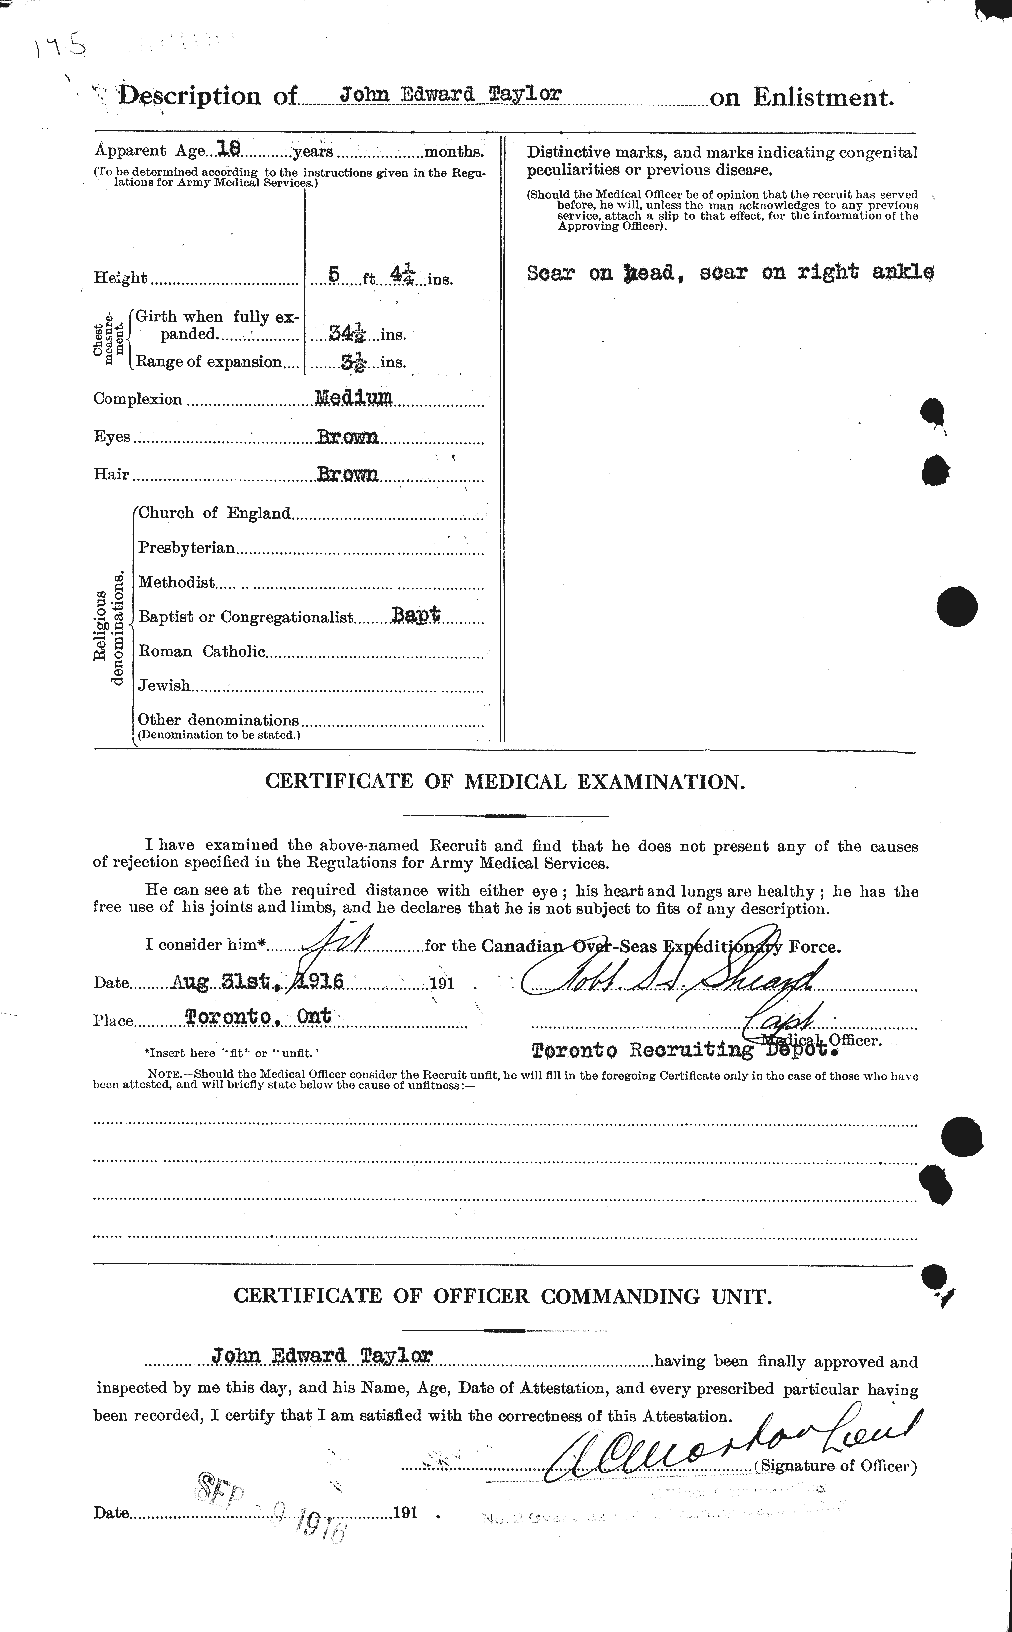 Dossiers du Personnel de la Première Guerre mondiale - CEC 627076b